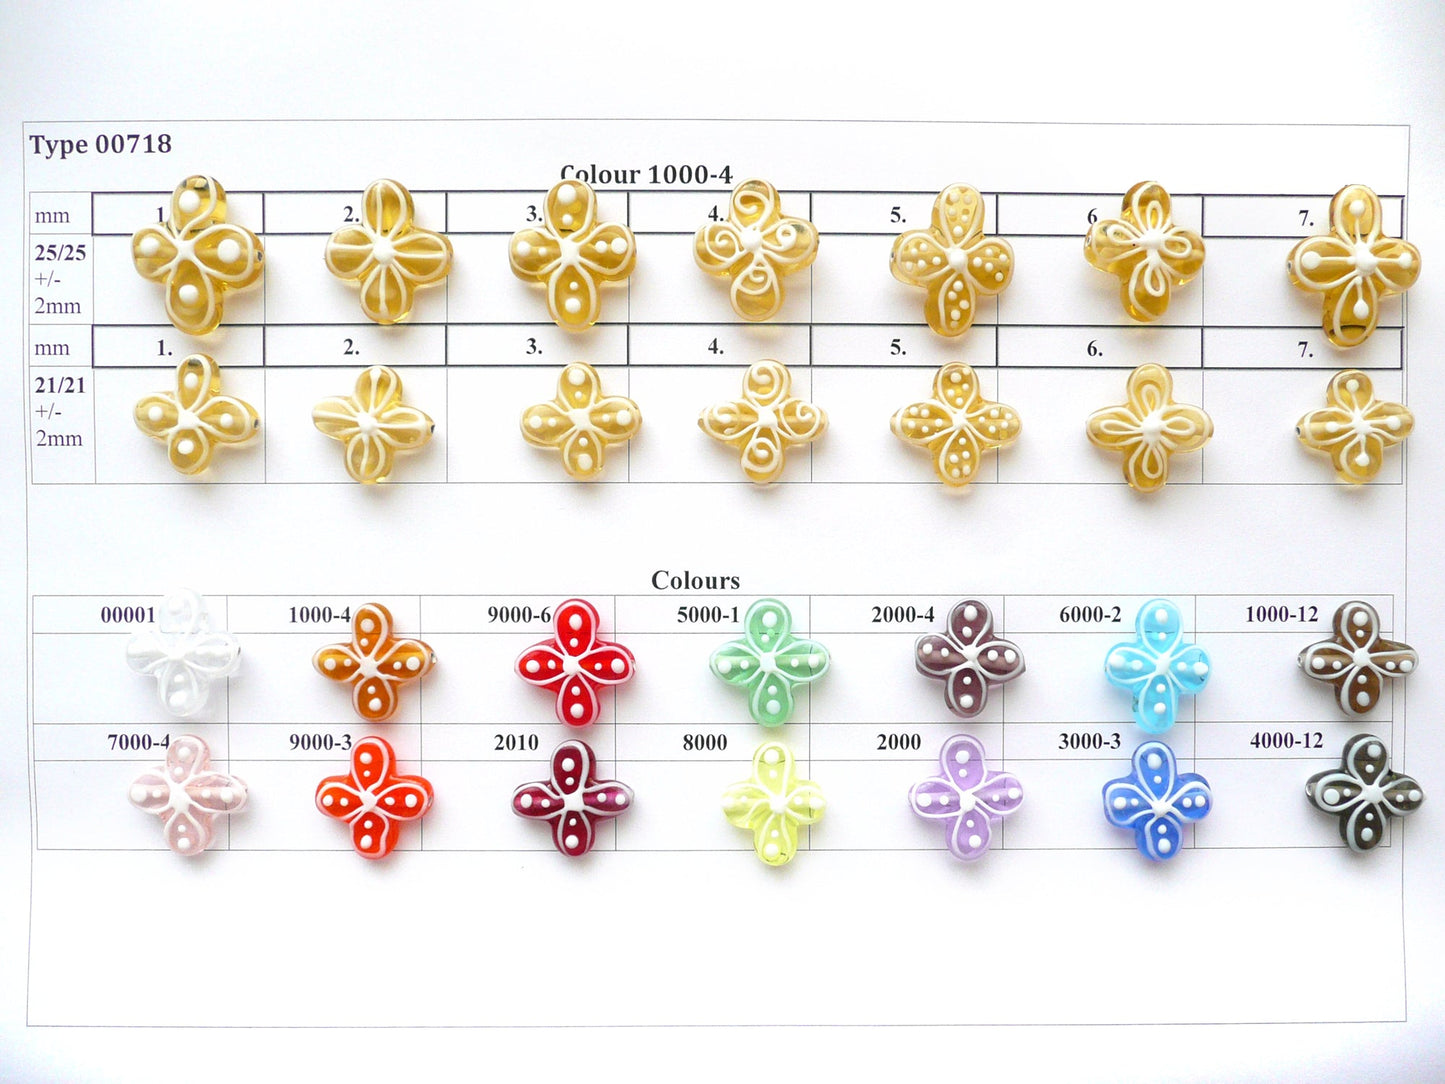 30 pcs Flower Lampwork Beads 718 / Design 6, Handmade, Preciosa Glass, Czech Republic